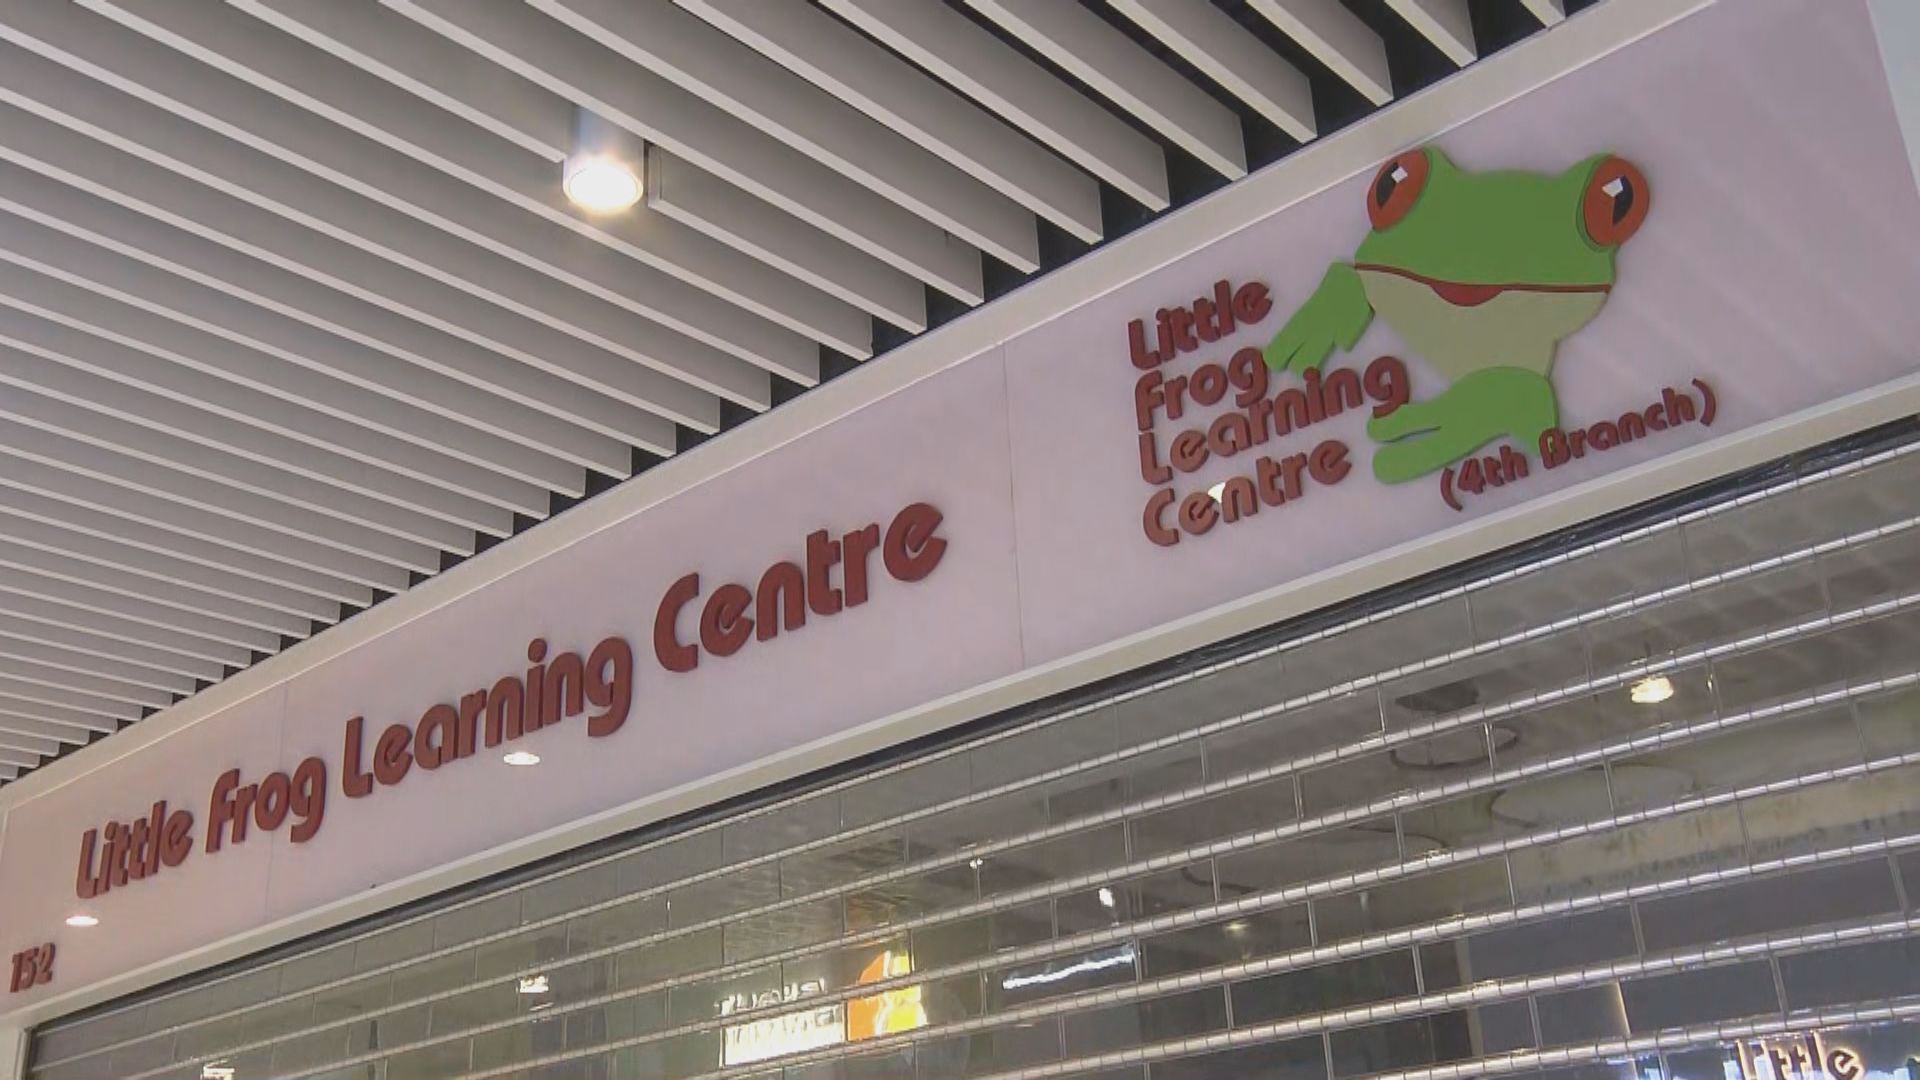 英語補習學校Little Frog疑結業 逾900人加入追討群組